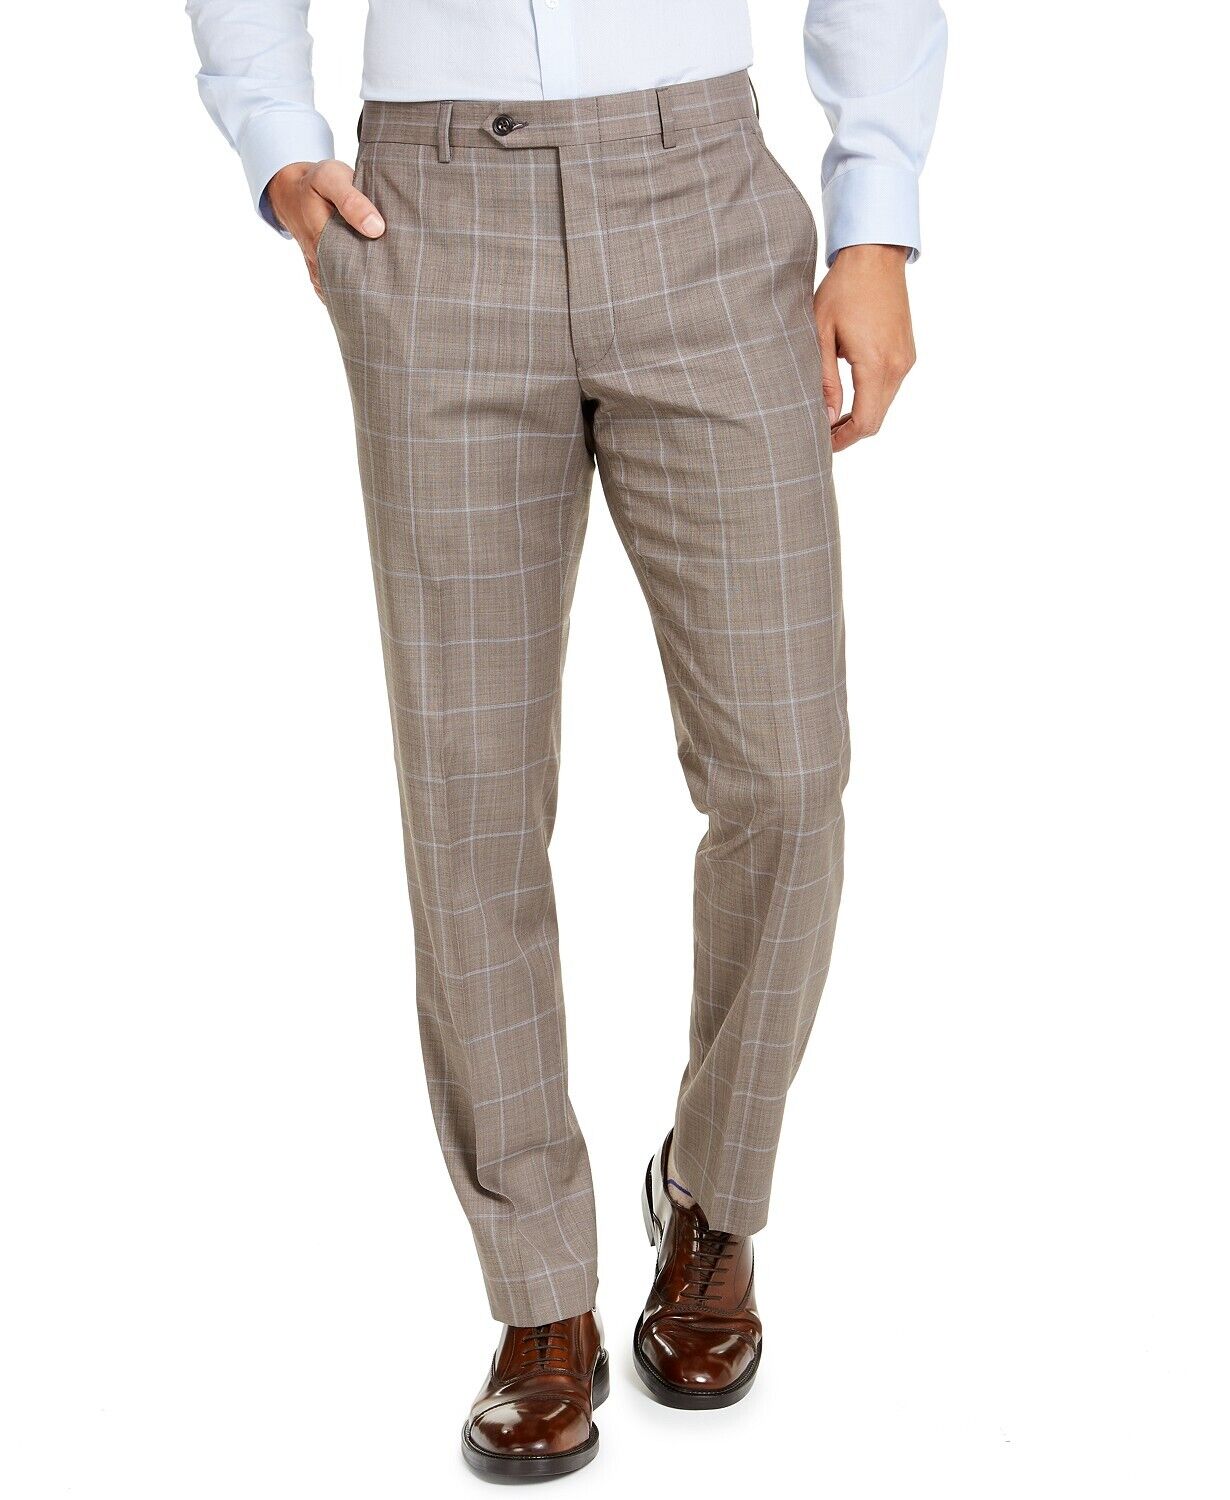 Michael Kors Men's Classic-Fit Stretch Brown Windowpane Suit Pants 30 x 32